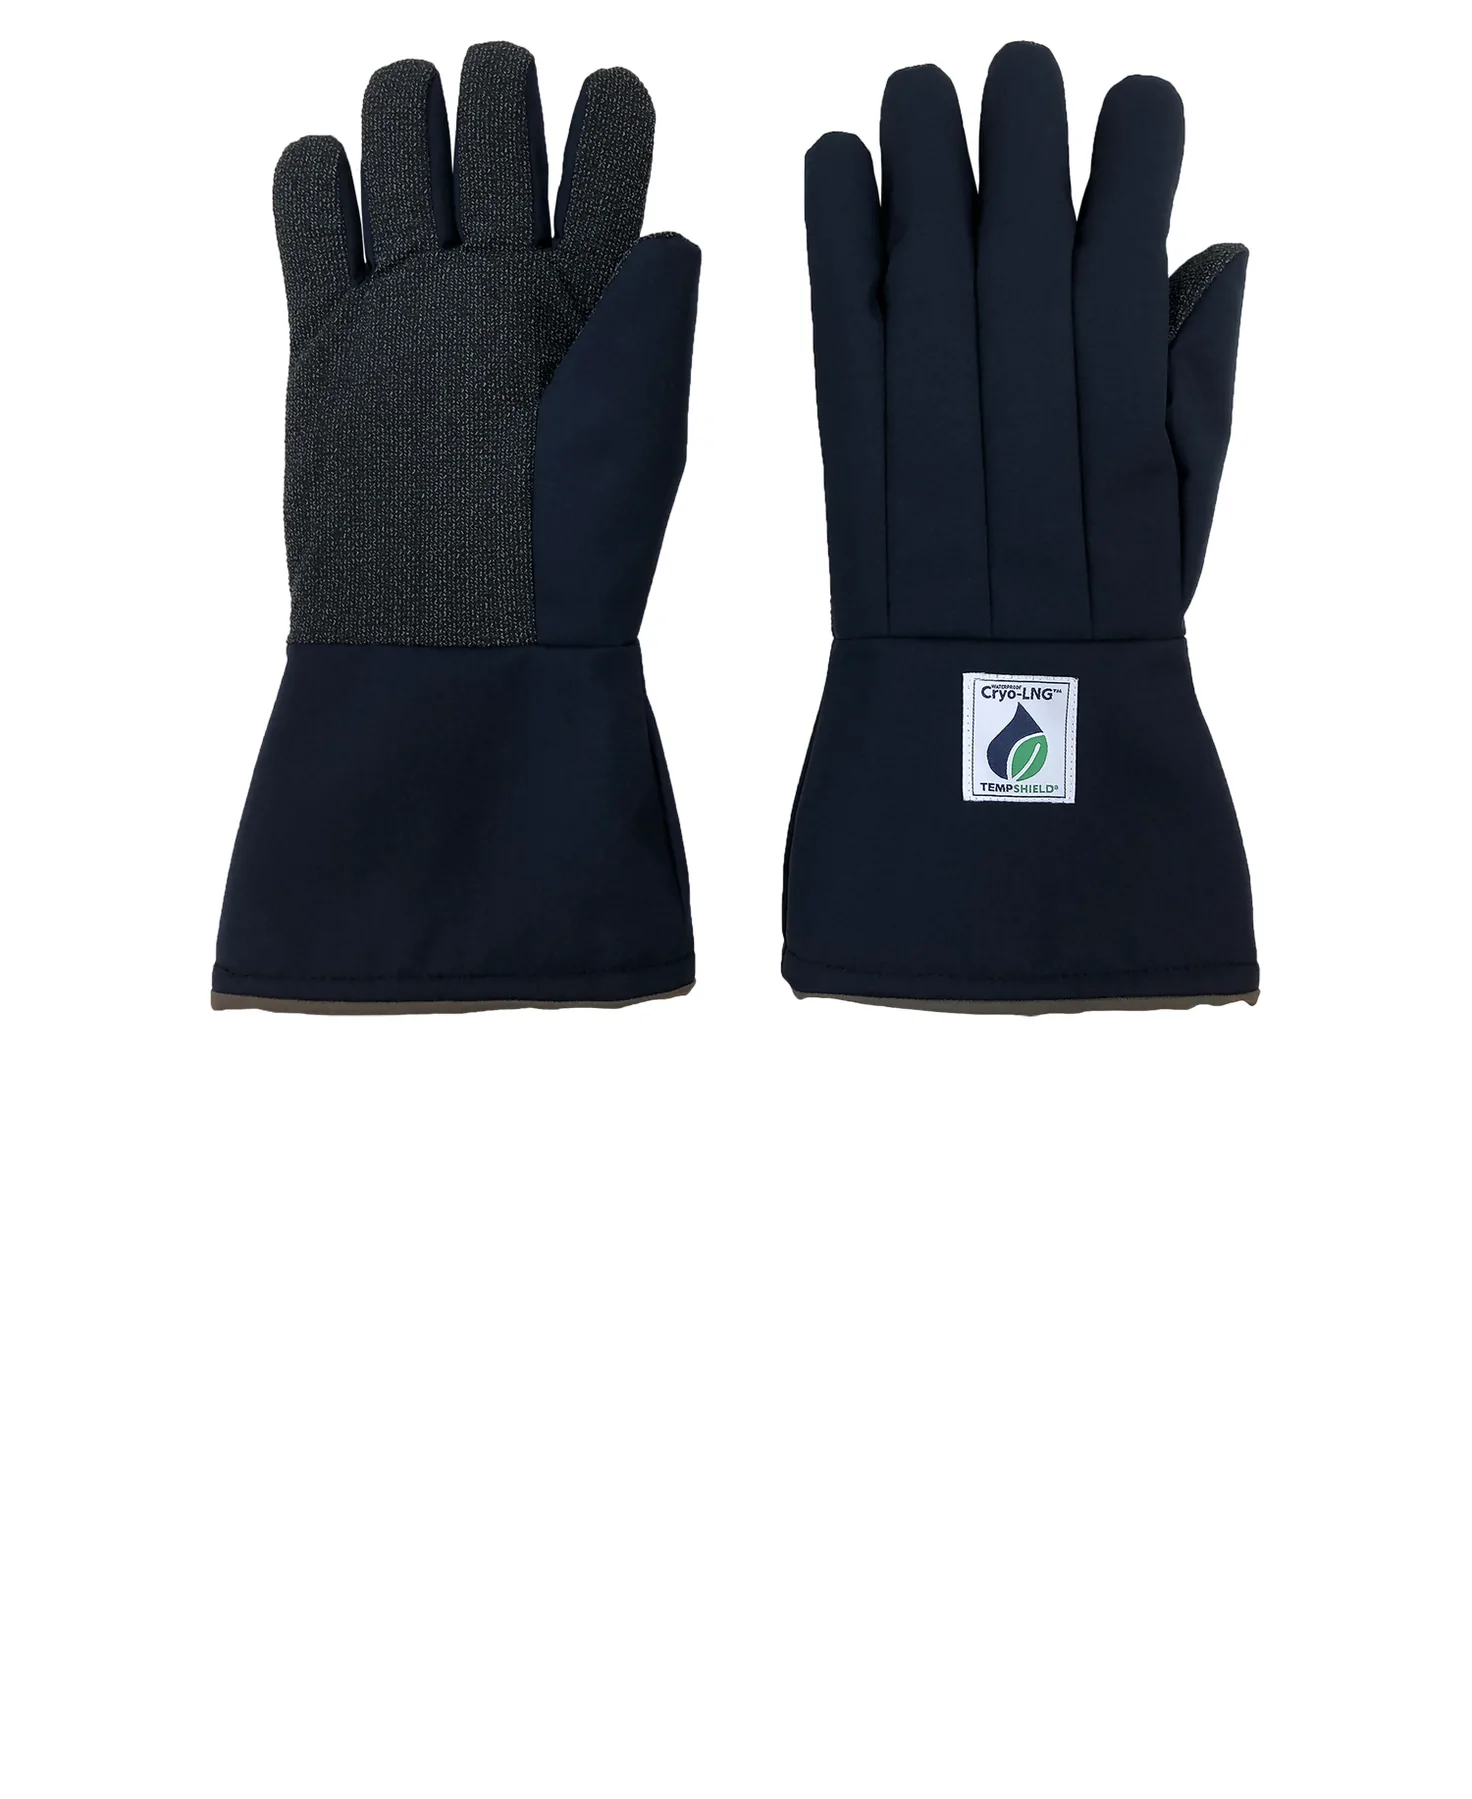 Labteamet_Tempshield_Kryohandskar_Vattentaaumlata-Waterproof-Cryo-LNG™-Gloves-1